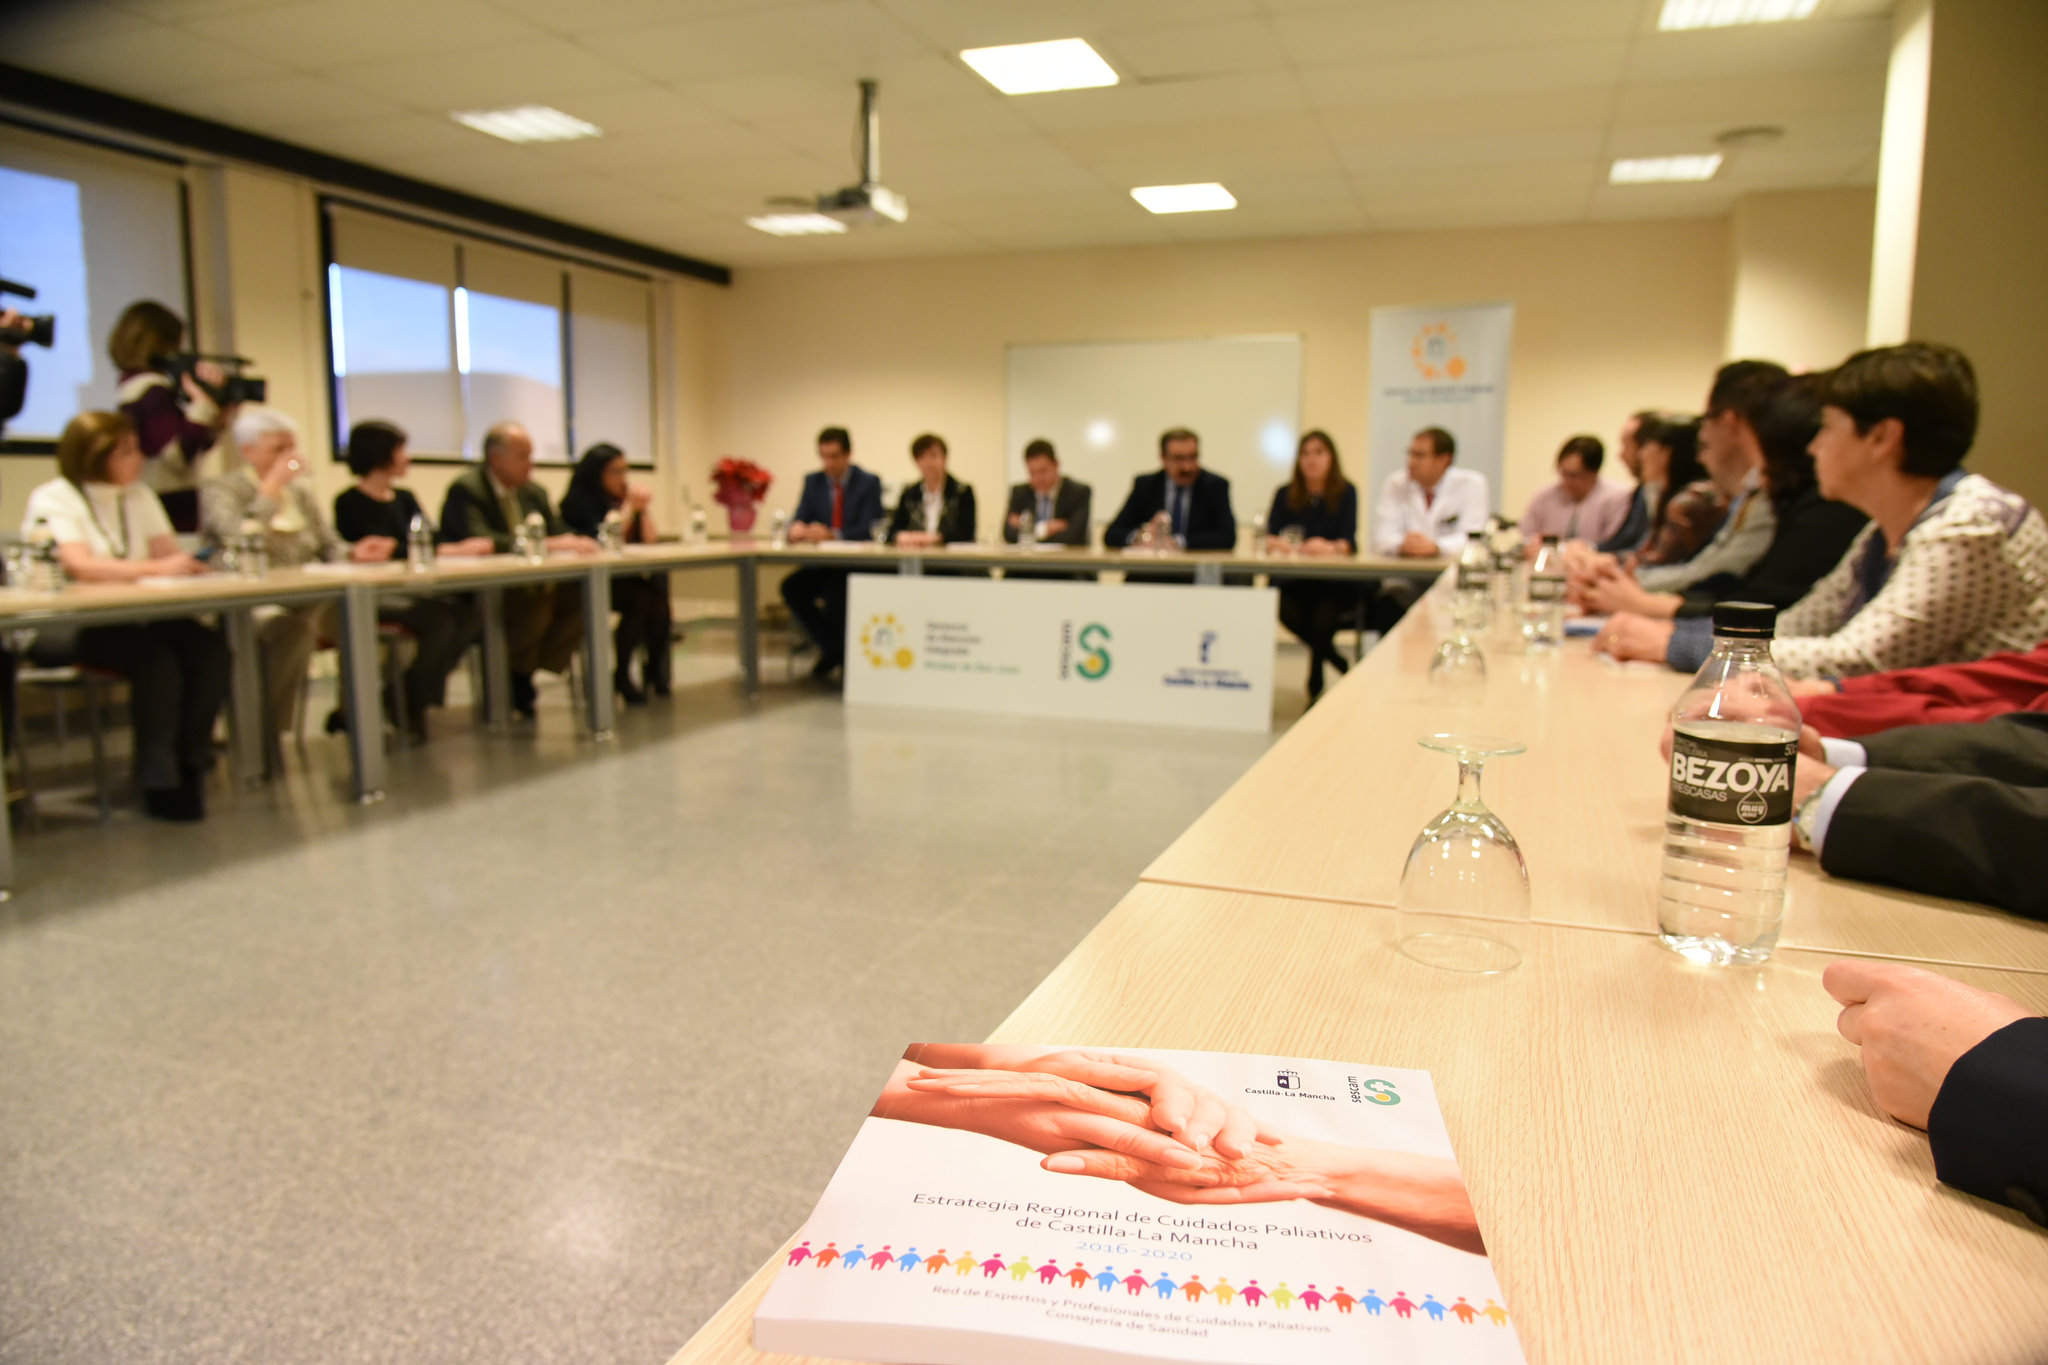 Los avances en Castilla La Mancha, un ejemplo a seguir: Estrategia de Cuidados Paliativos con nuevos equipos y recursos